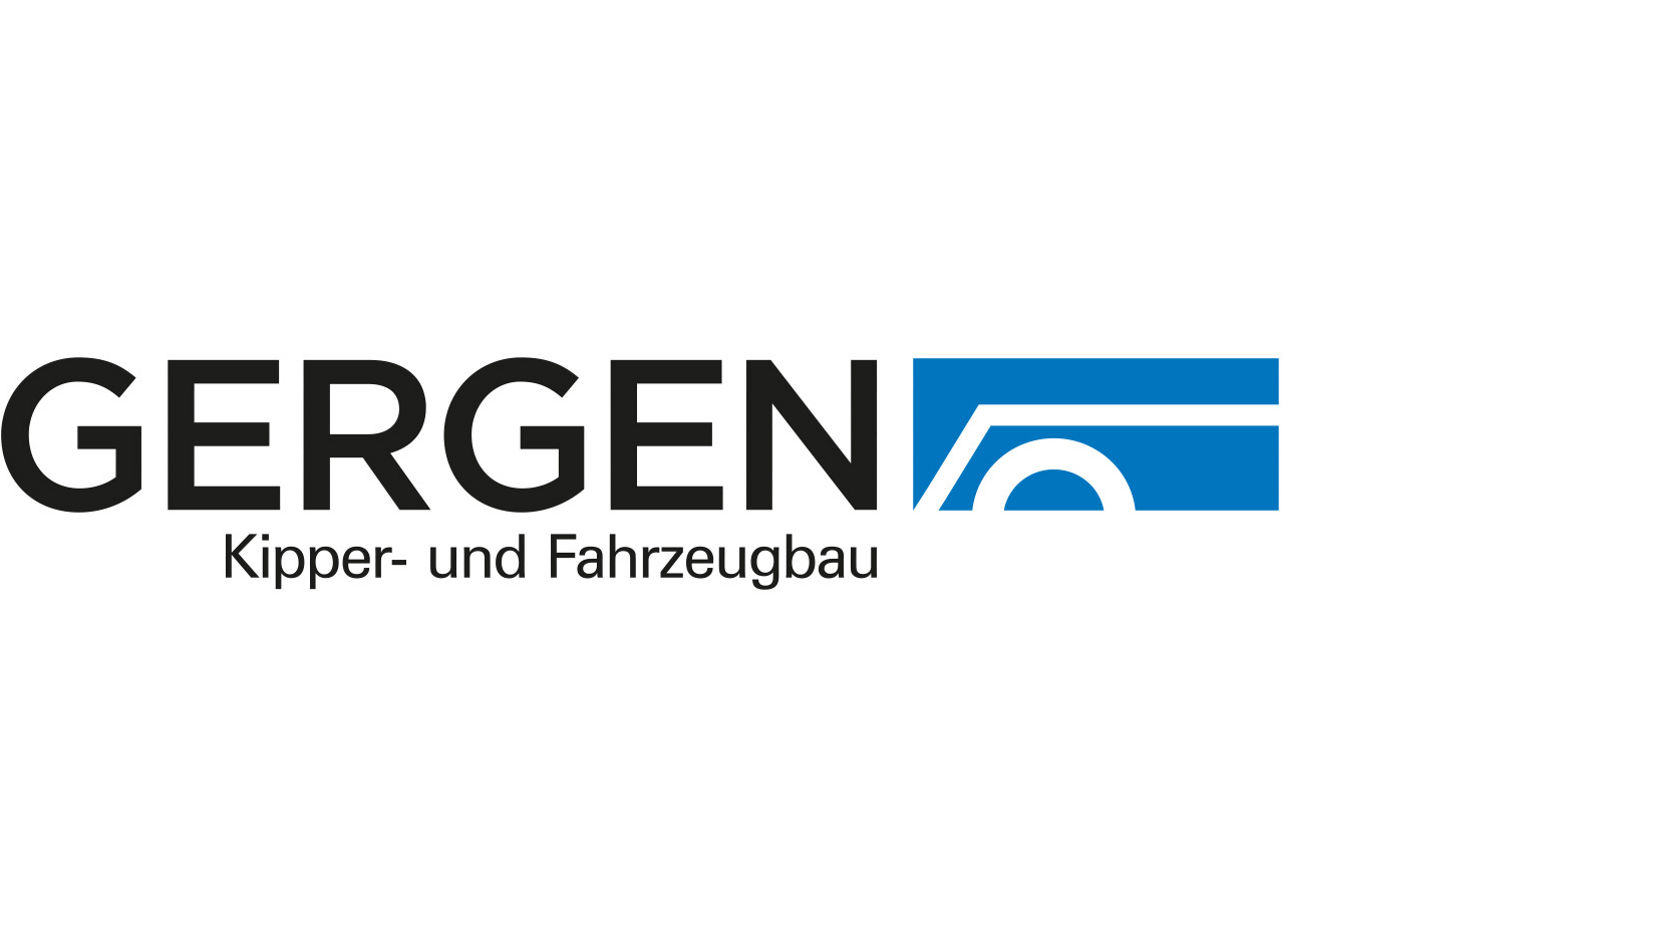 GERGEN Kipper- und Fahrzeugbau GmbH